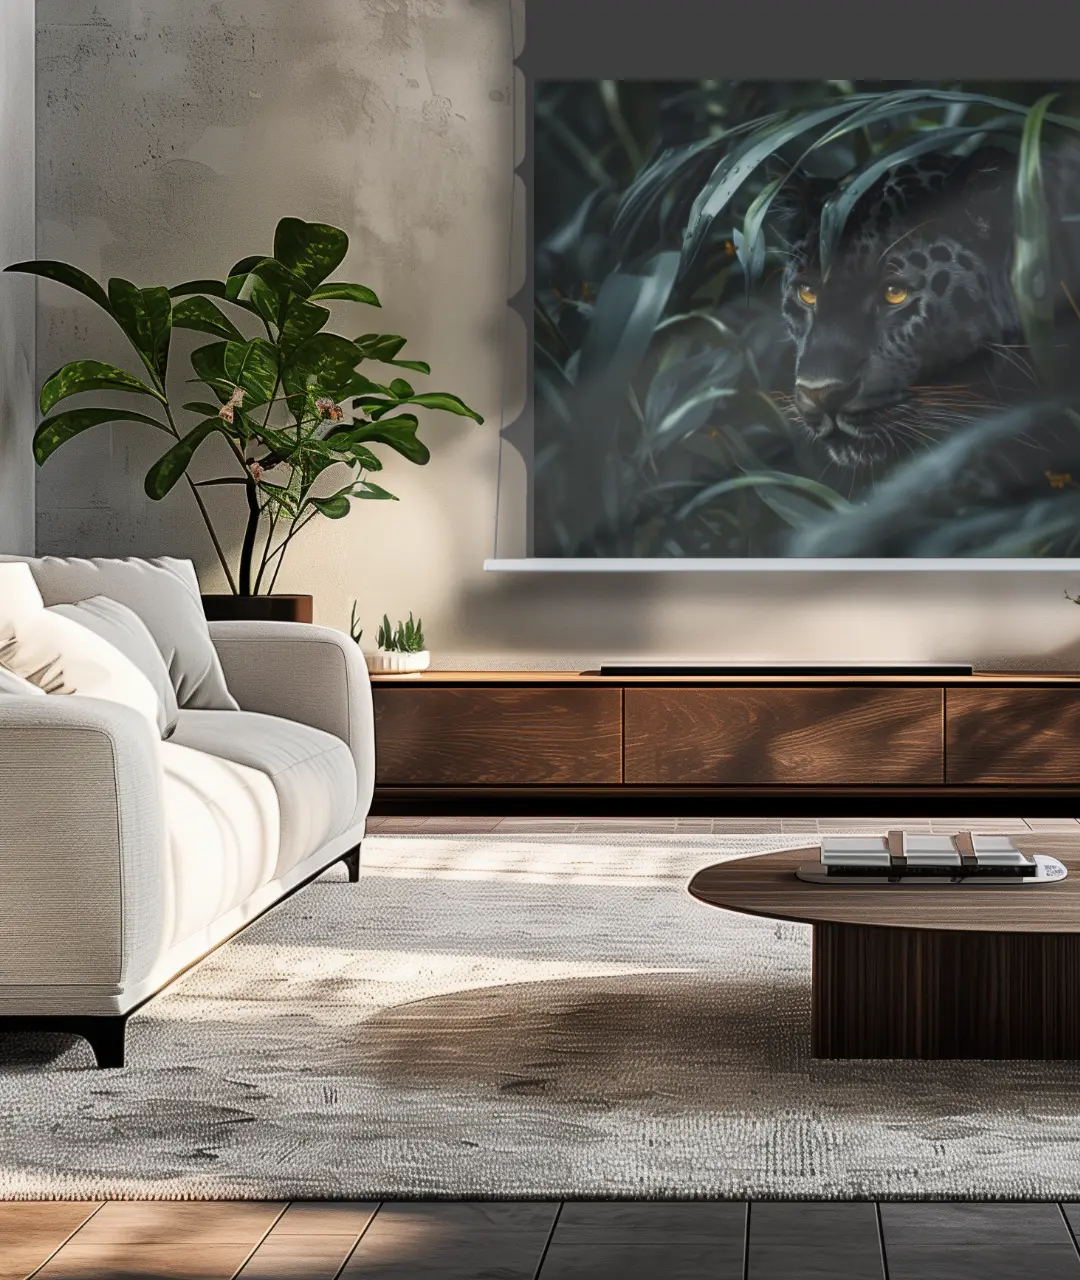 Die Screenline Radiance Bright Wave EdgeFree Tension in einem modernen Wohnraum. Auf der Leinwand ist eine Kontrastreiche Jungle Szene mit einem Panther zu sehen.